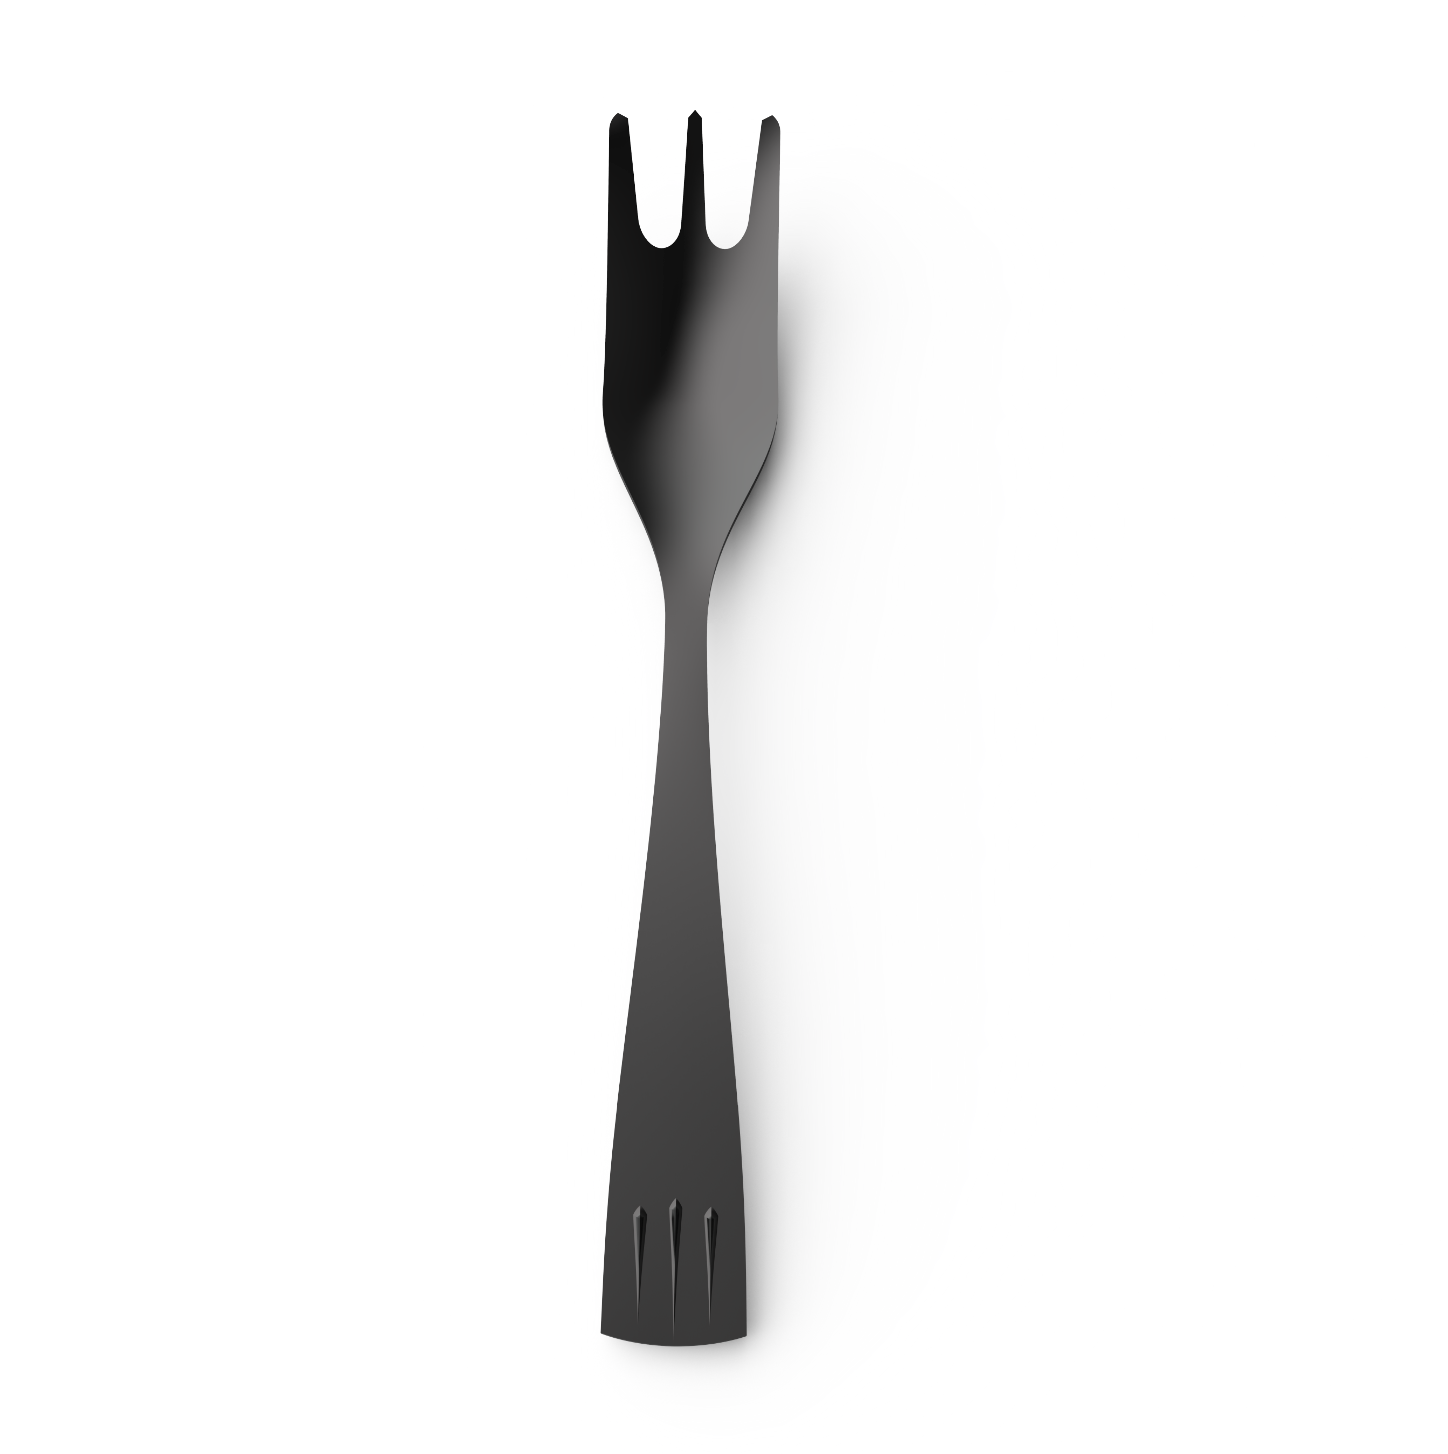 Fork - Product design